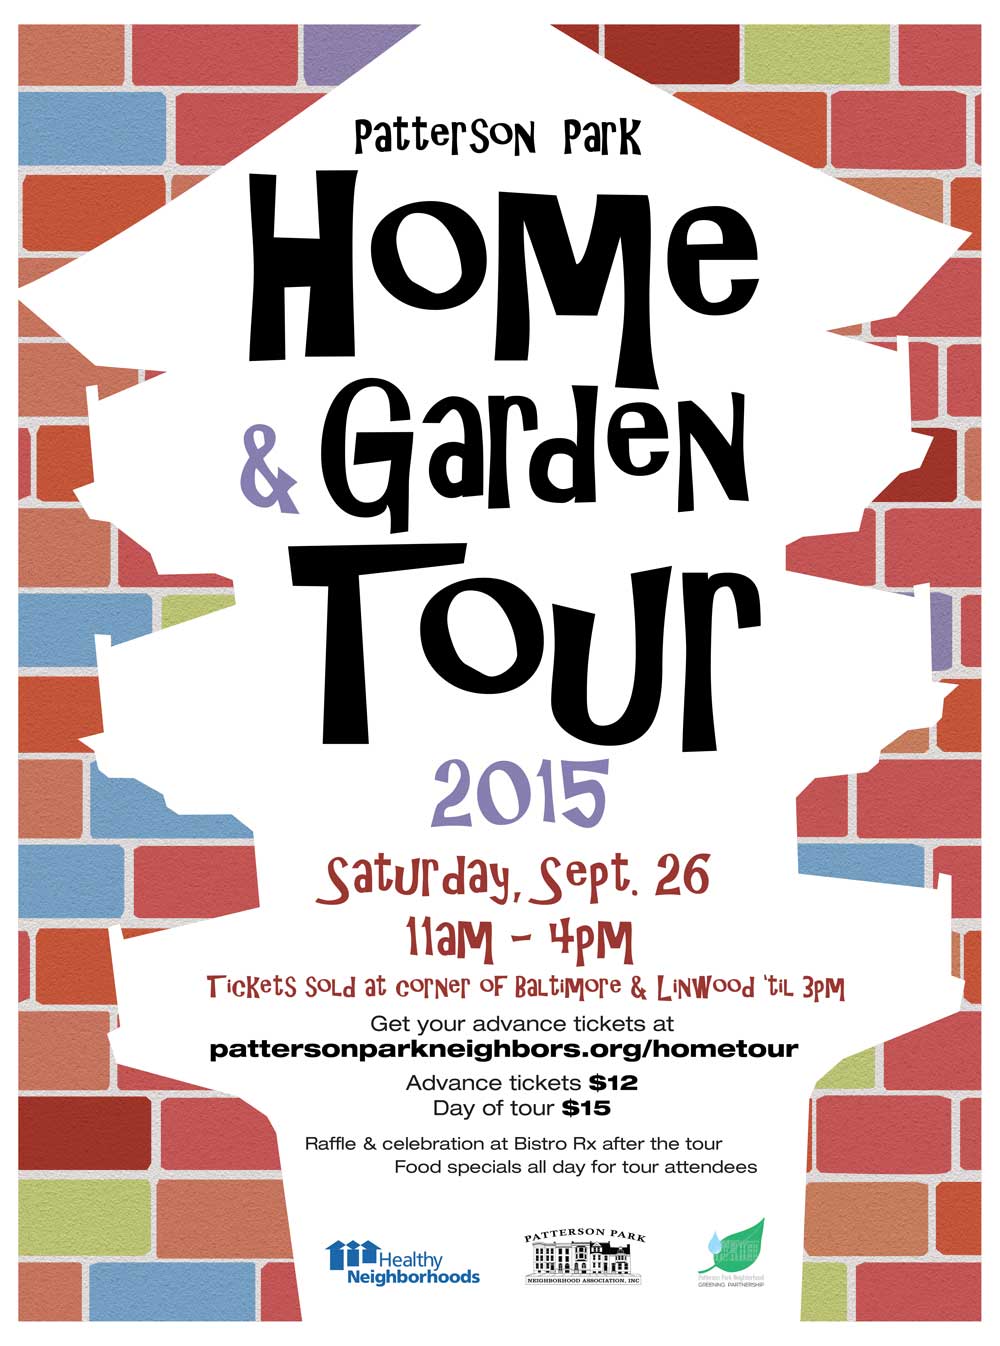 Patterson Park Home Tour 2015 poster